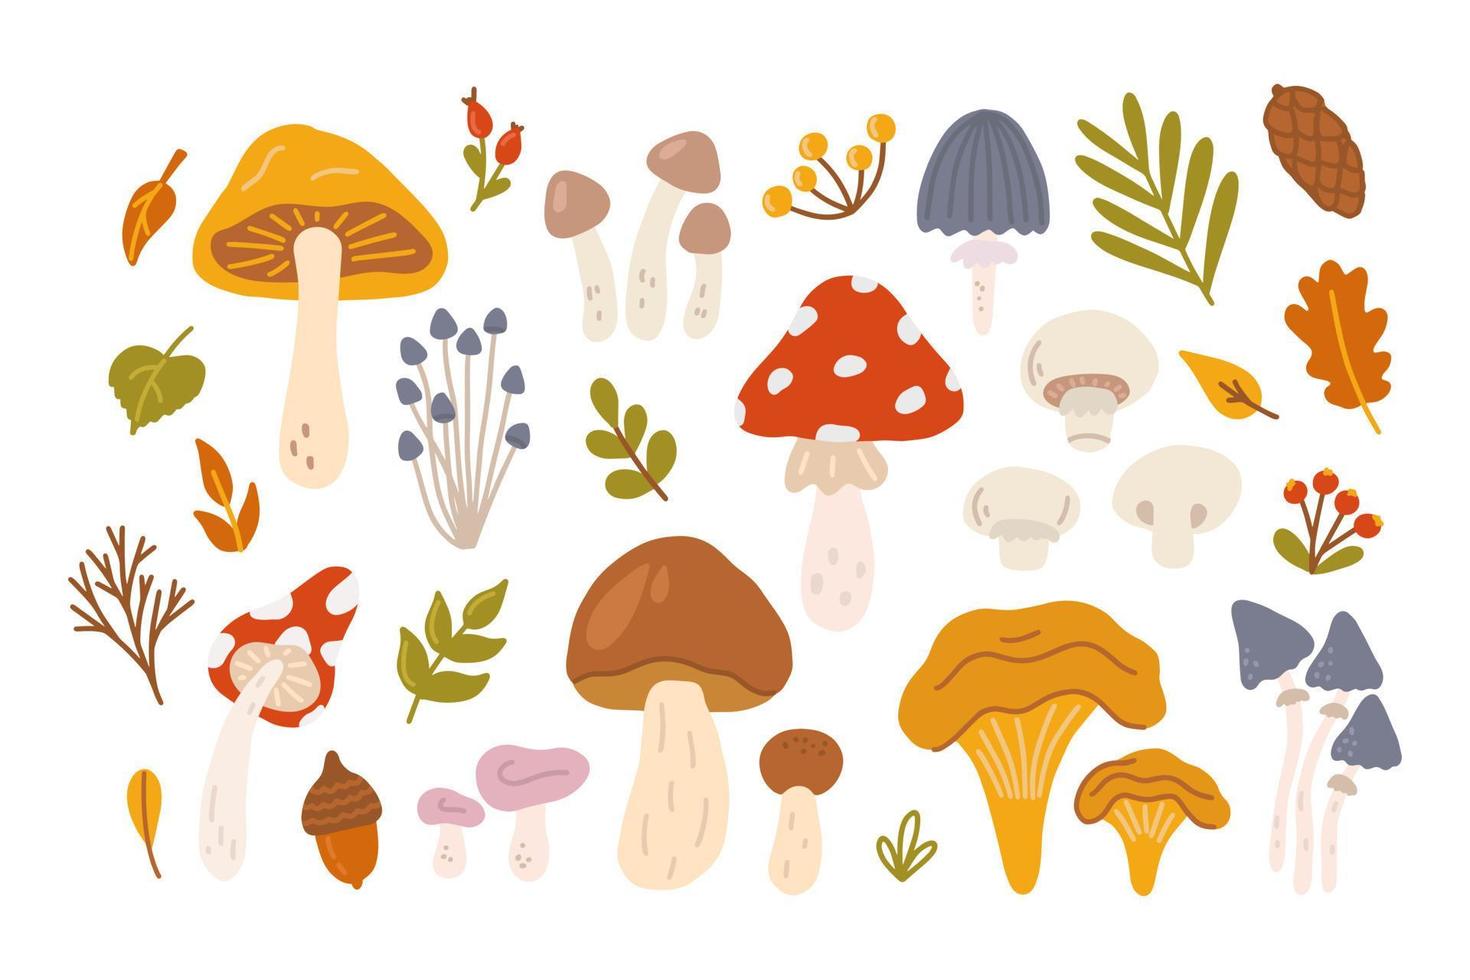 ensemble de différents champignons avec des baies et des feuilles d'arbres. illustration vectorielle plate dans un style dessiné à la main sur fond blanc vecteur